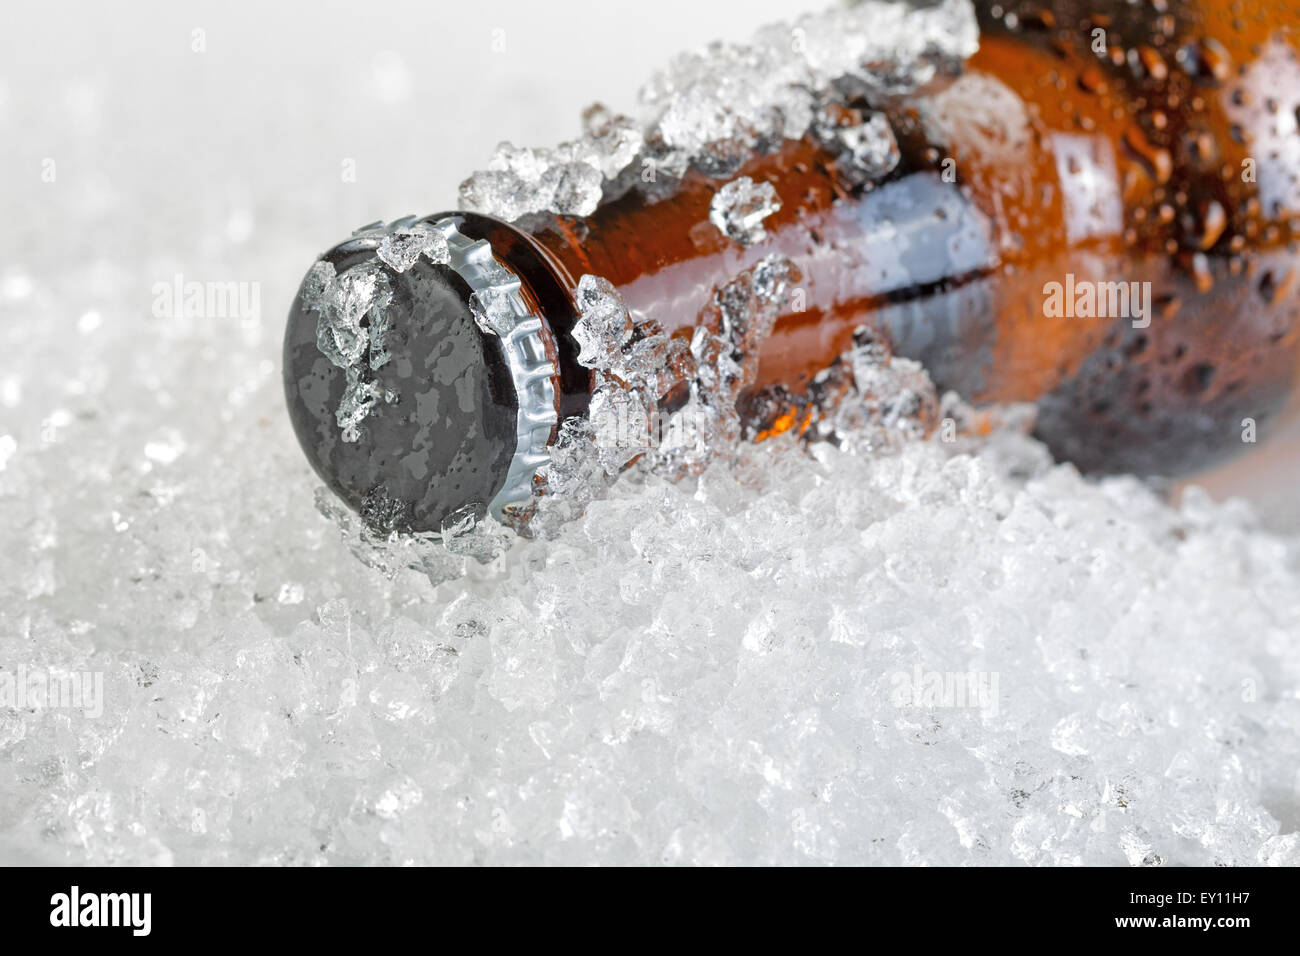 Nahaufnahme eines Bier Flasche Hals bedeckt mit Eis- und beschlagfrei. Layout im Querformat. Flaschenverschluss mit Sha im Fokus Stockfoto